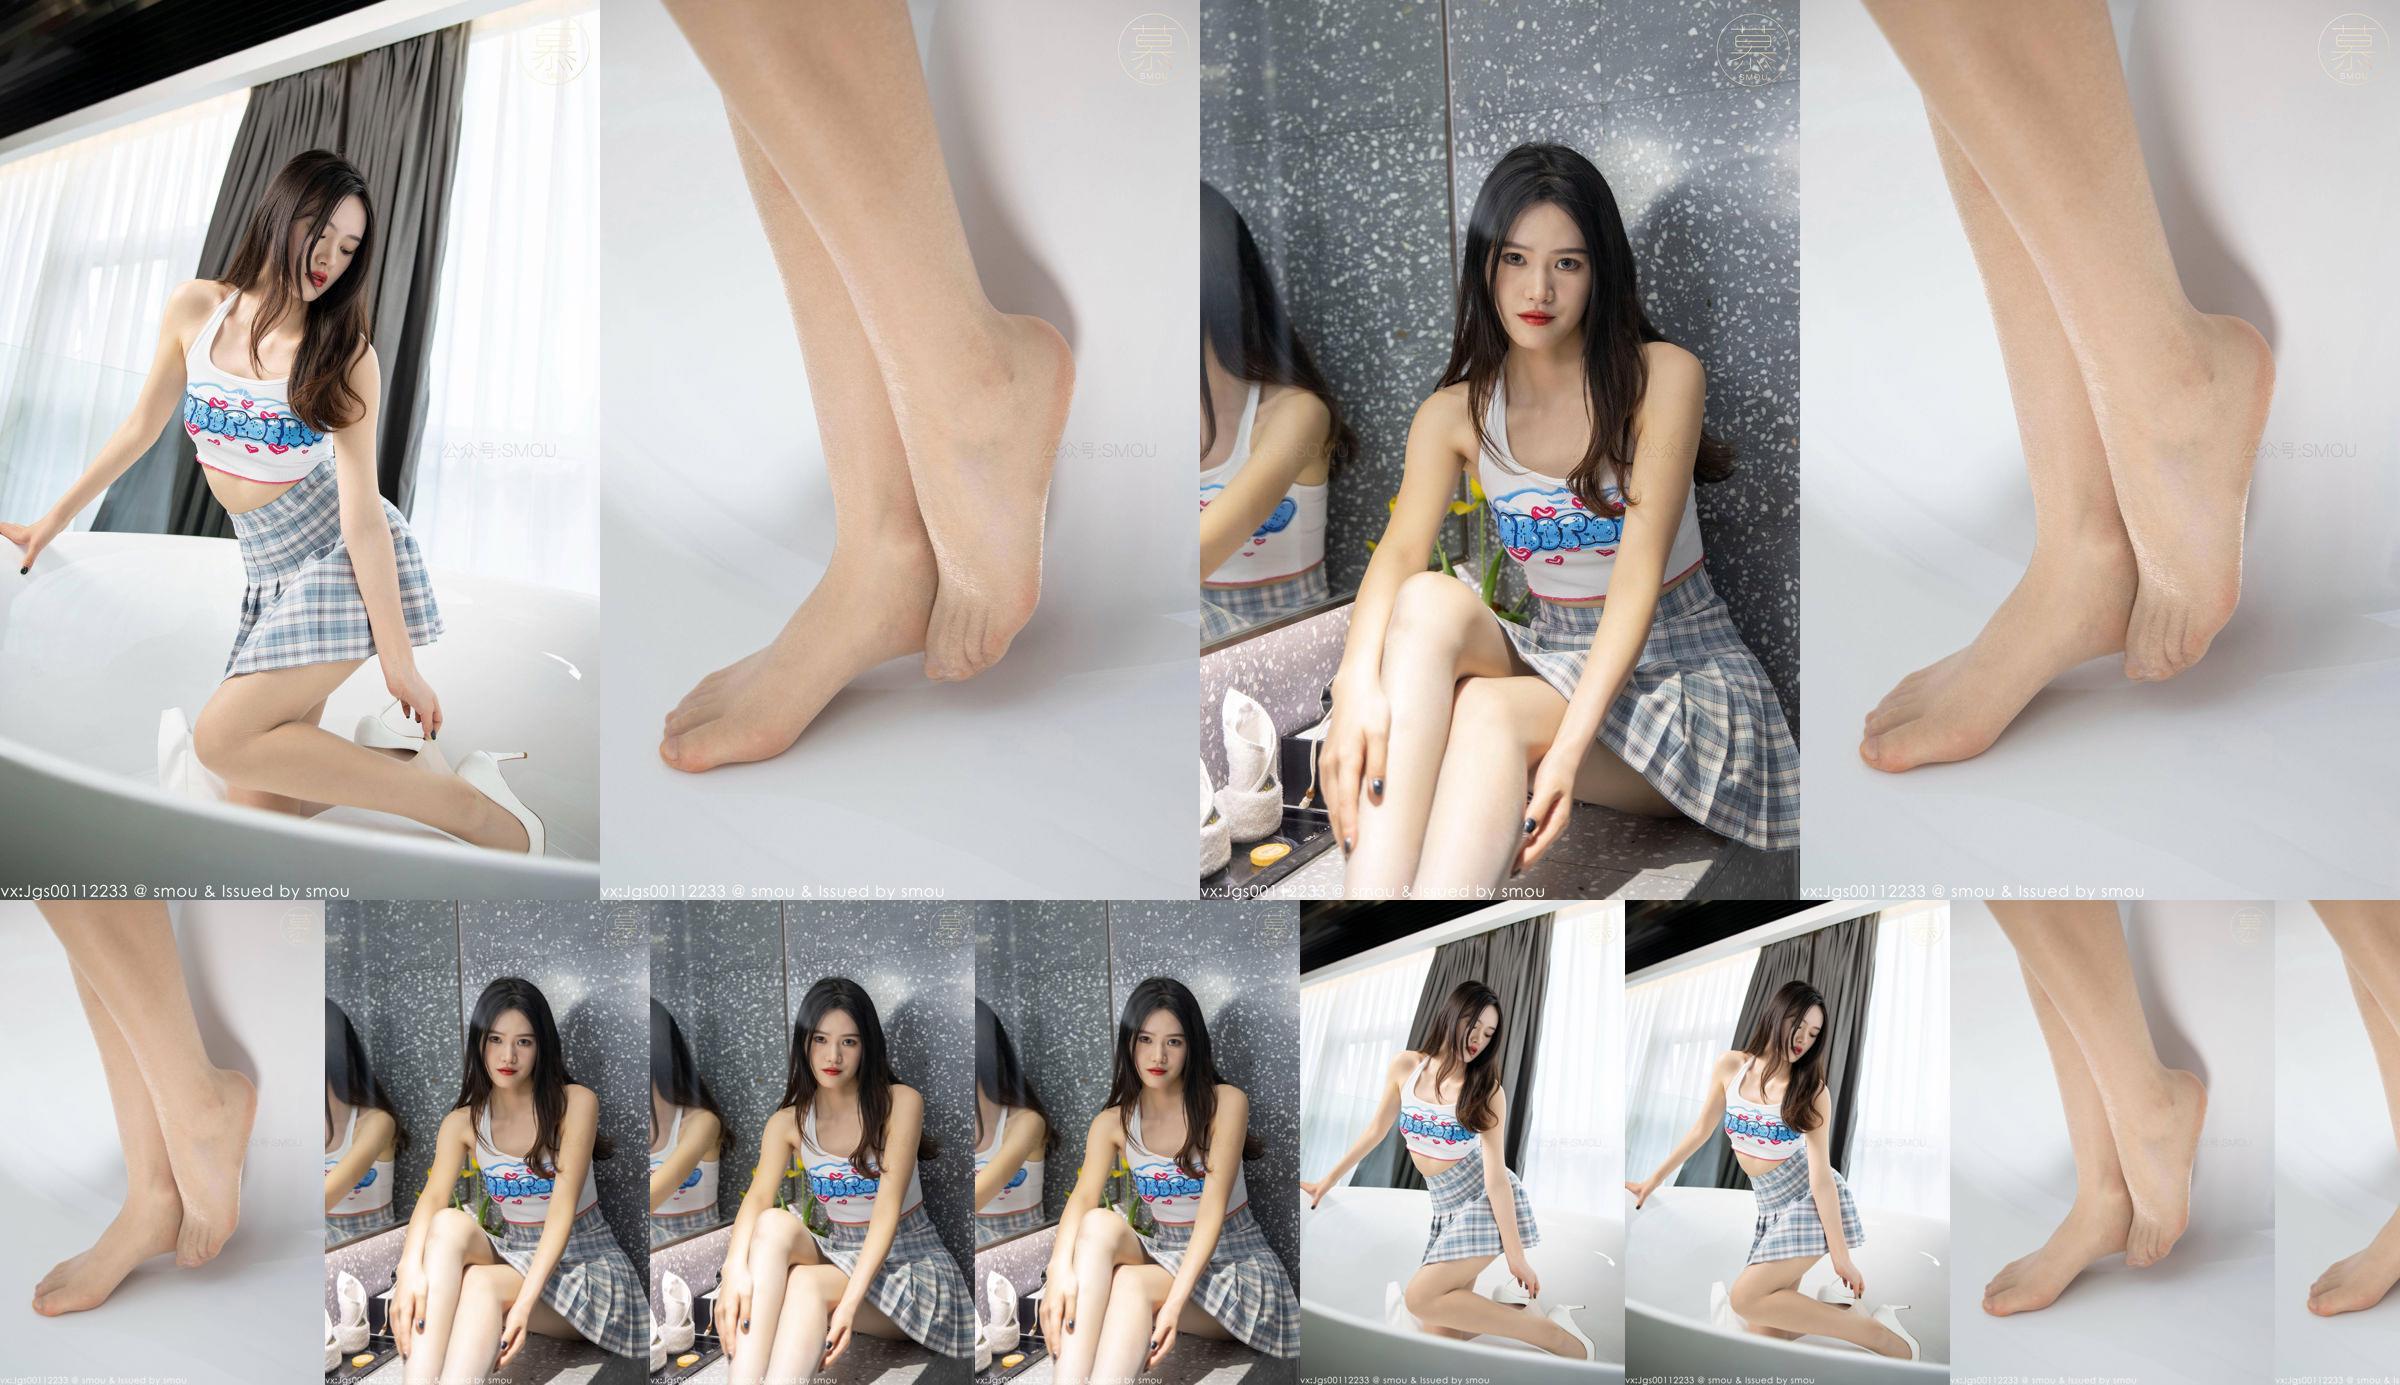 [SMOU] Honey Series M014 nouveau modèle Weiwei collants belle couverture de jambe No.290377 Page 3